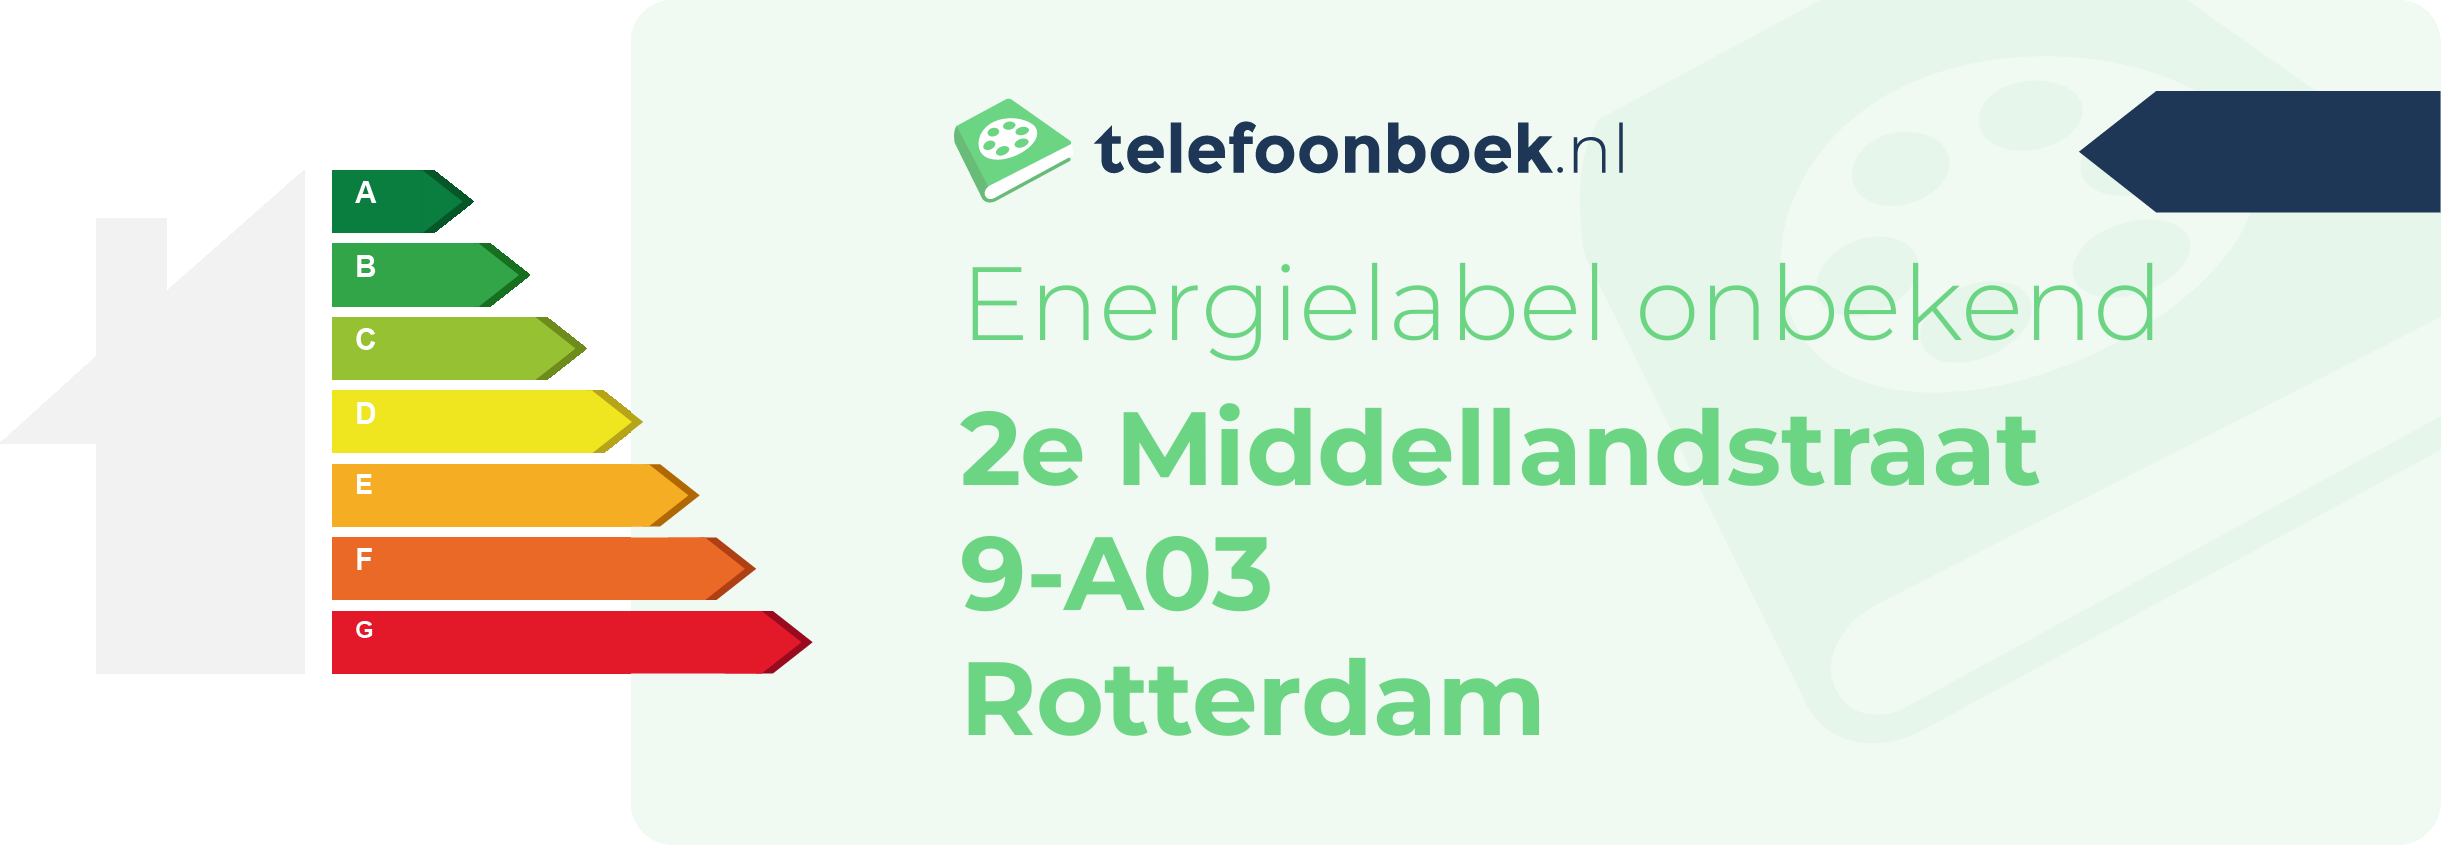 Energielabel 2e Middellandstraat 9-A03 Rotterdam